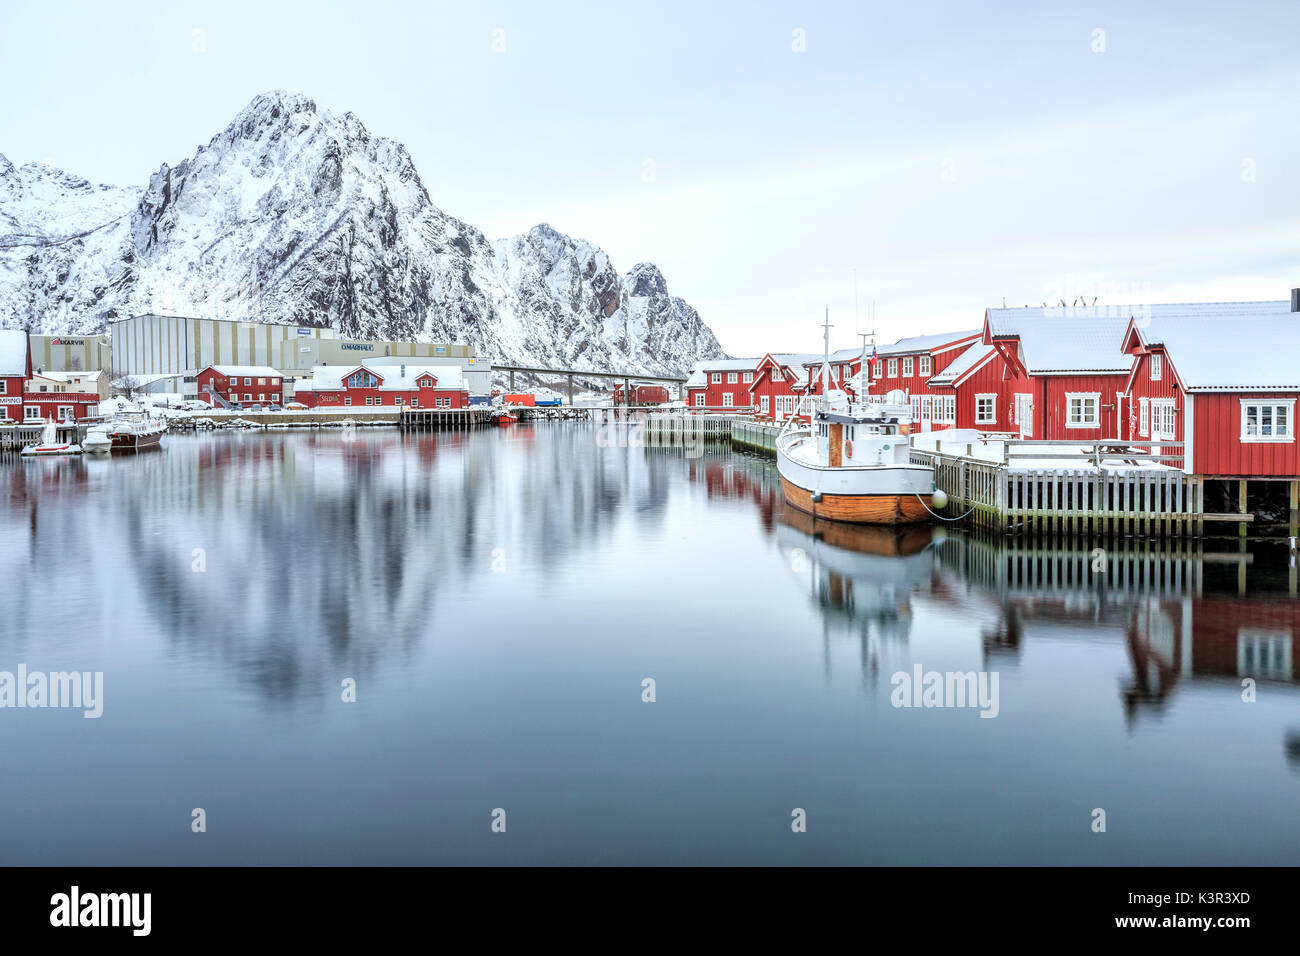 Port de Svollvaer avec ses maisons sur pilotis. Iles Lofoten. La Norvège. L'Europe Banque D'Images